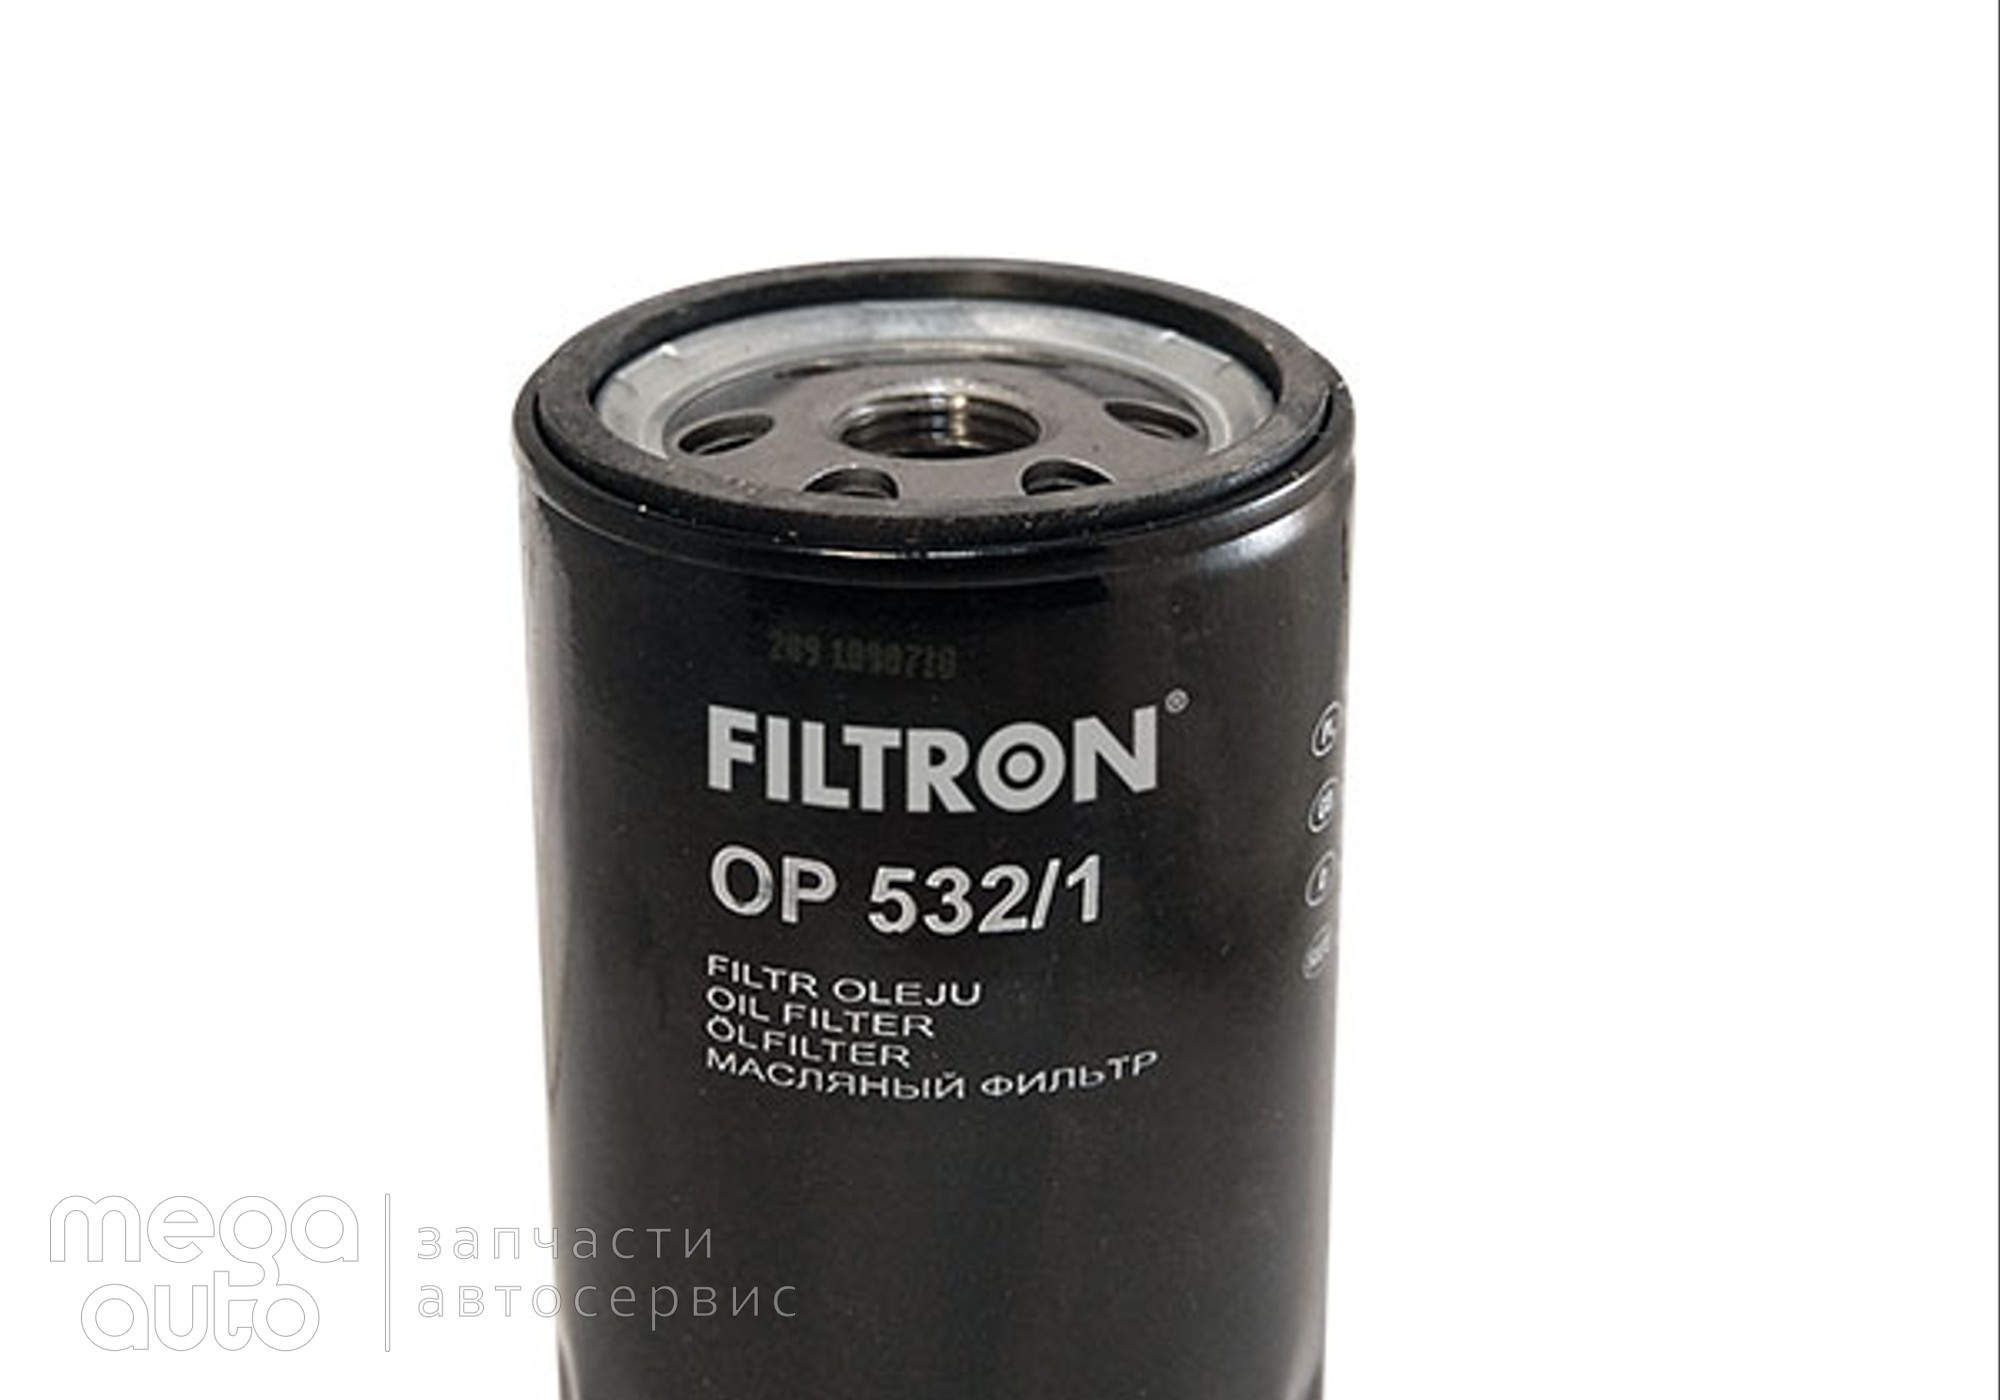 96565412 Масляный фильтр форд мондео, эскорт(Filtron) для Rover 200